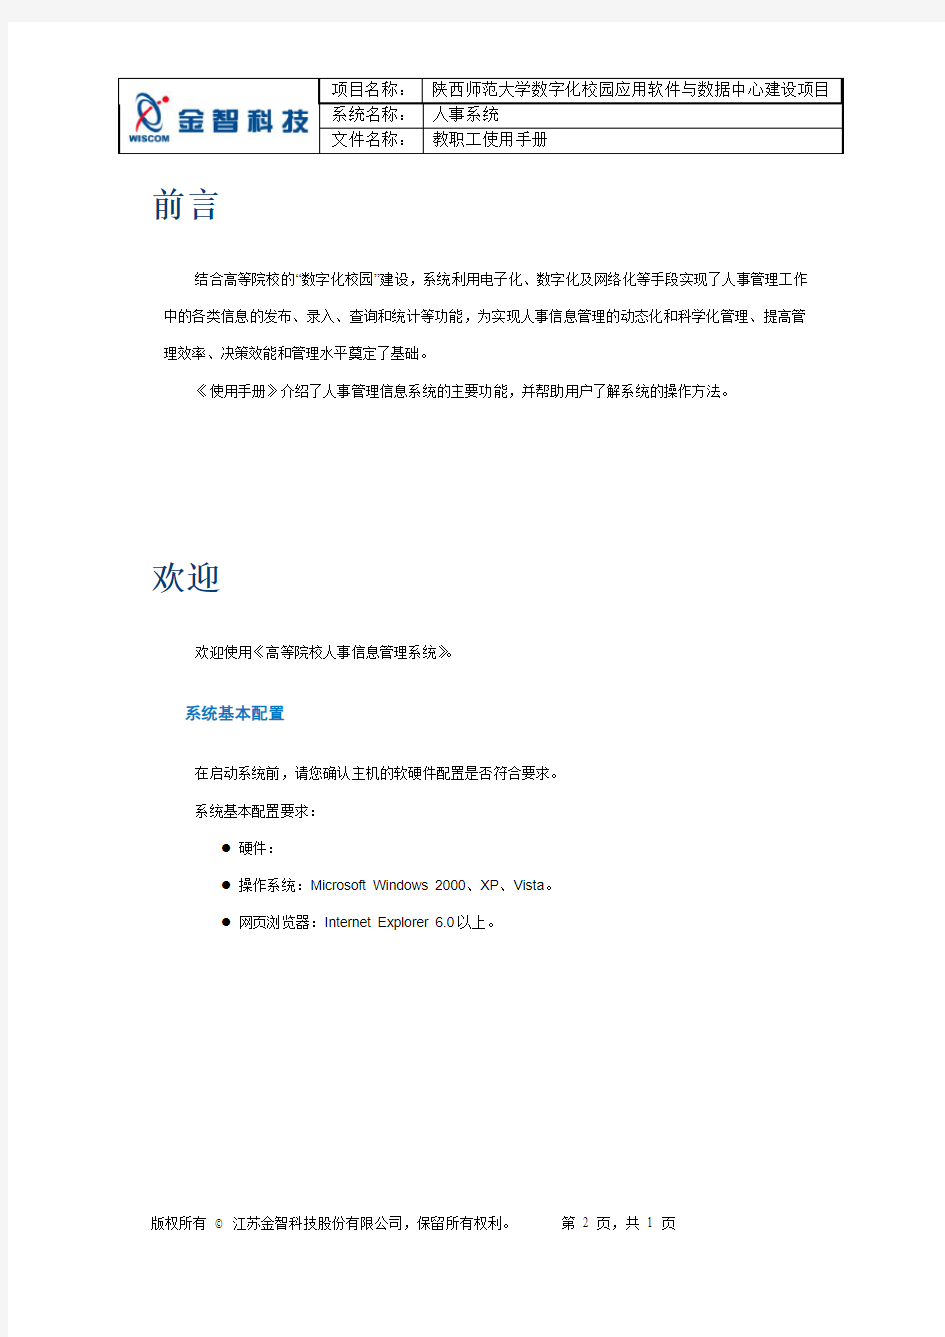 陕西师范大学数字化校园人事系统教职工使用手册